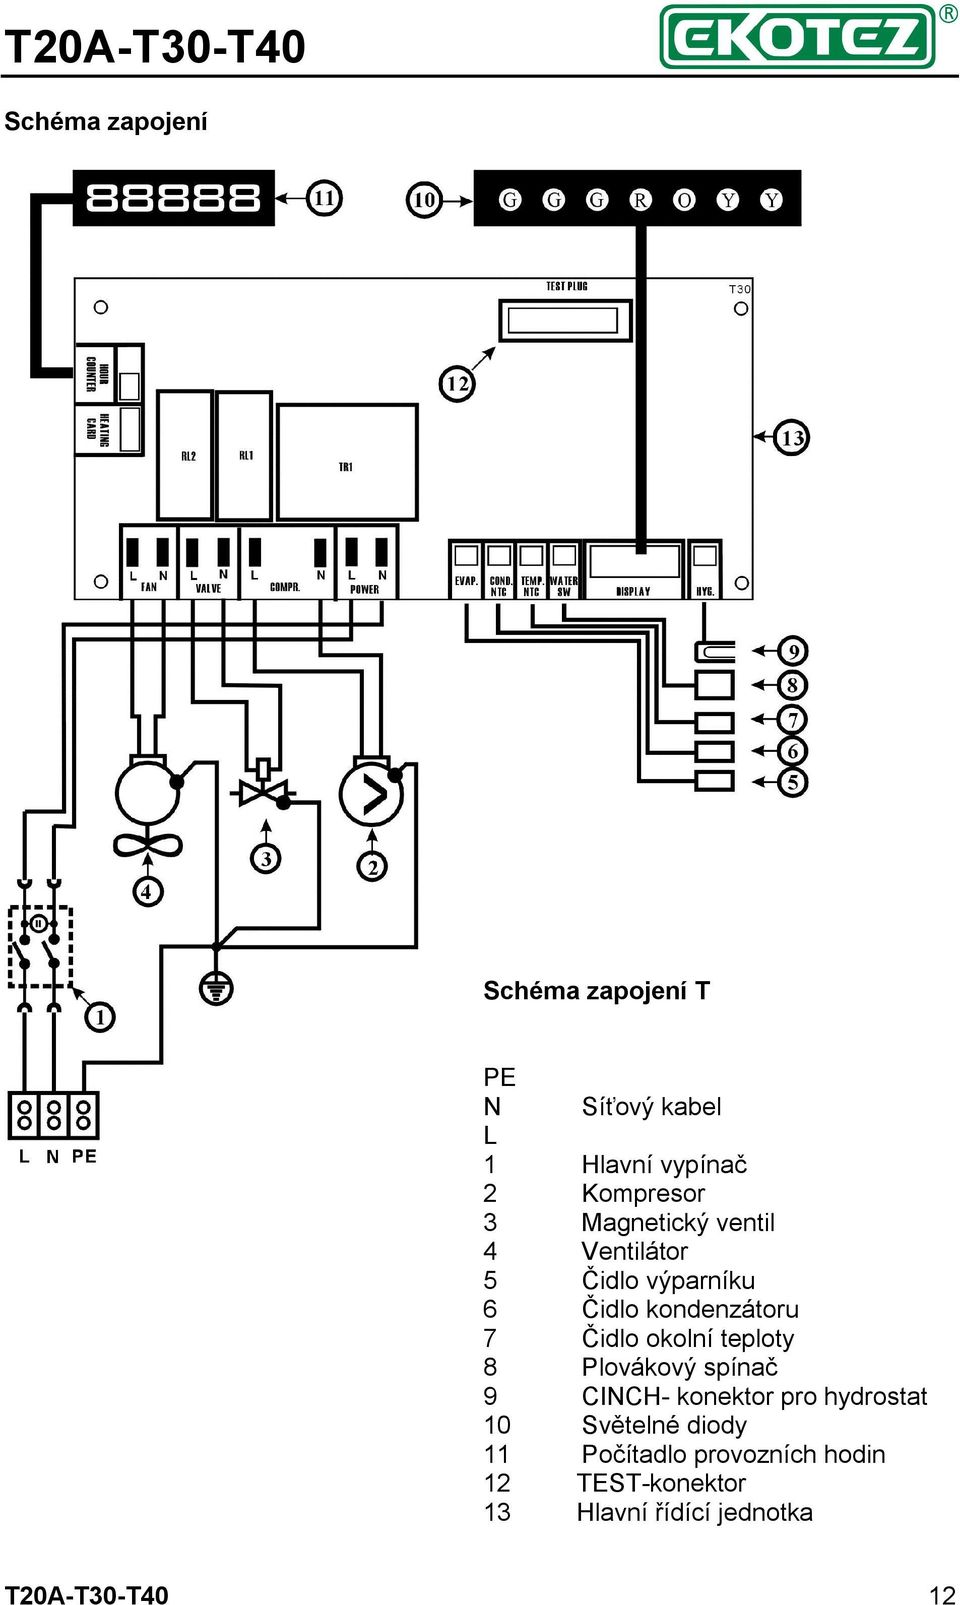 okolní teploty 8 Plovákový spínač 9 CINCH- konektor pro hydrostat 10 Světelné diody